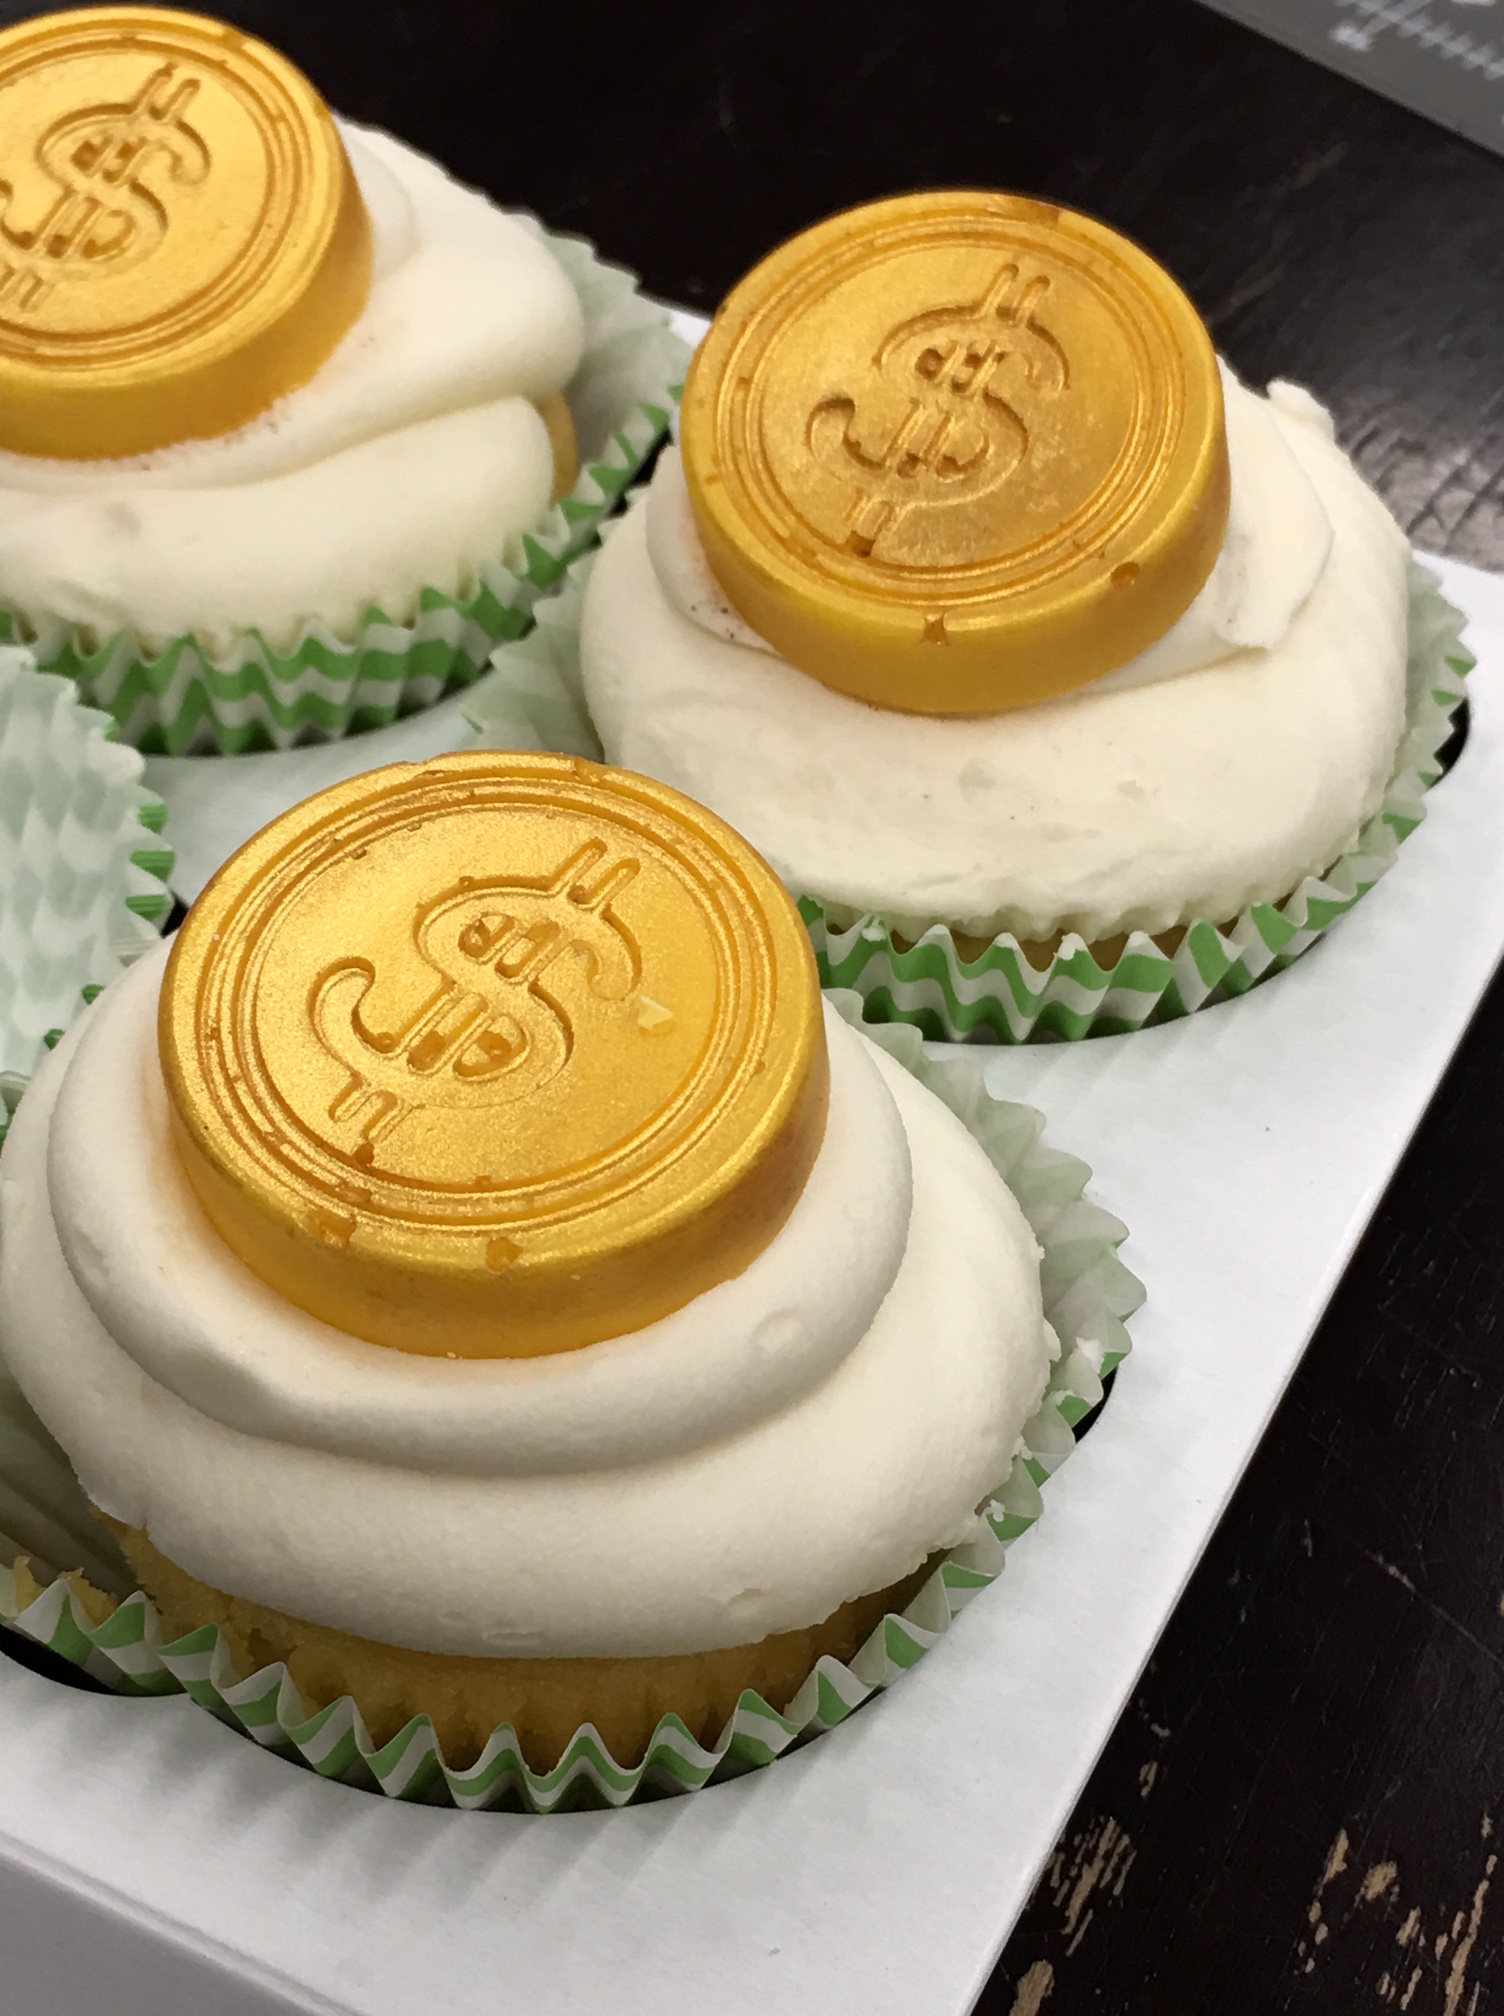 Gold Coin cupcakes